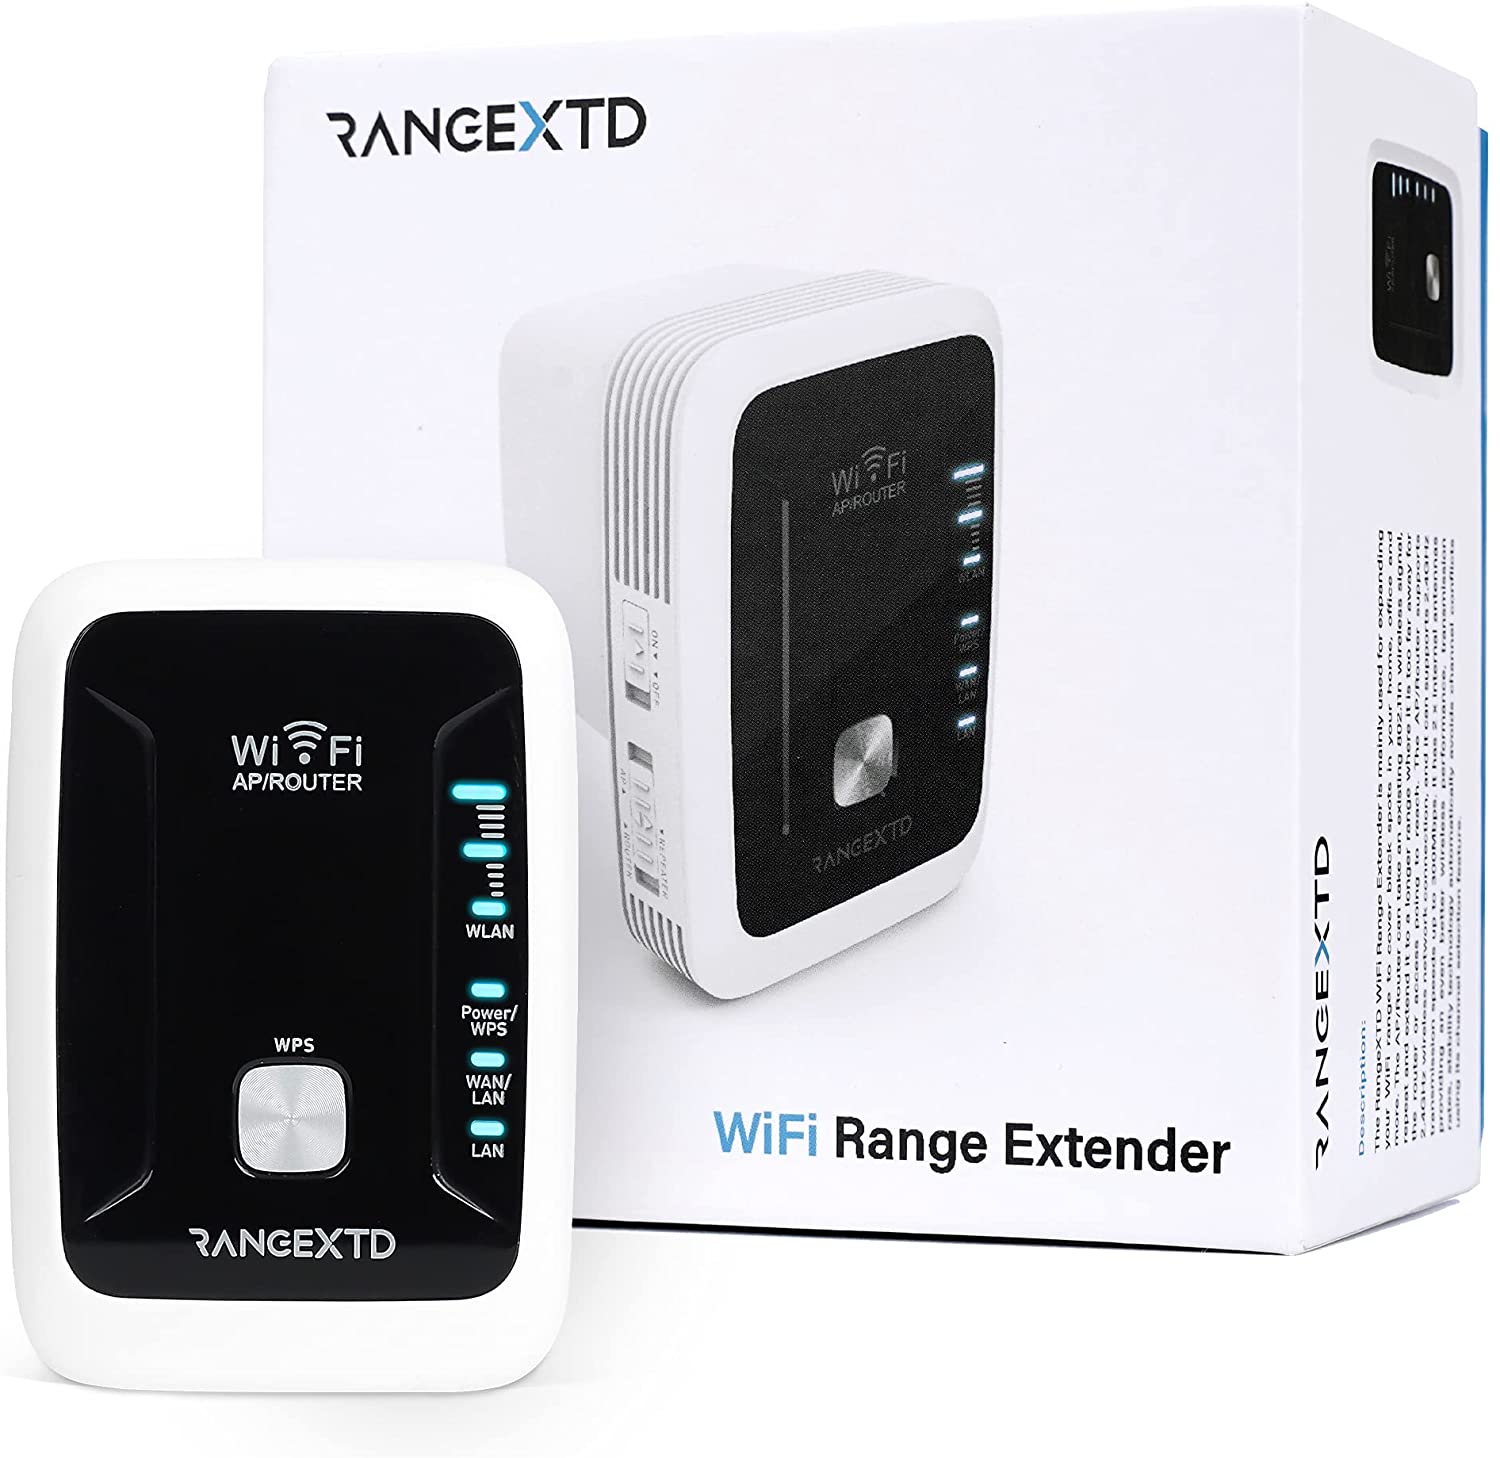 RANGEXTD WiFi Extender User Guide